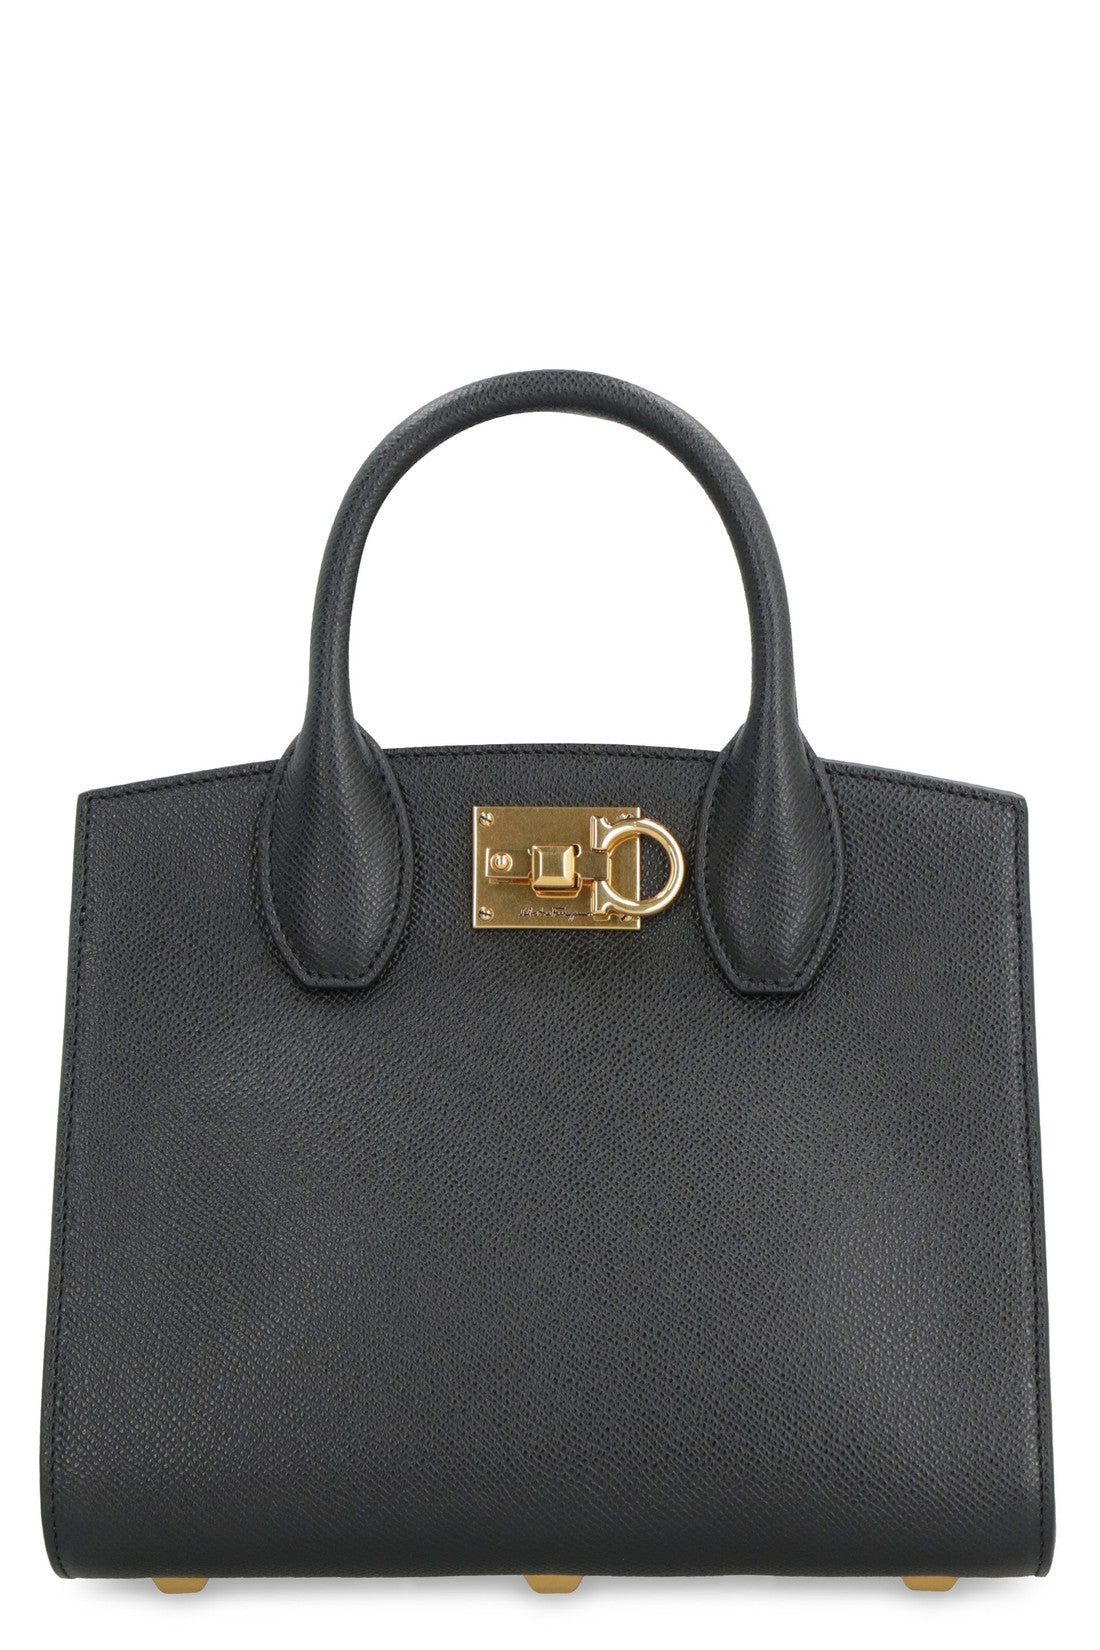 FERRAGAMO-OUTLET-SALE-Studio Box leather mini handbag-ARCHIVIST